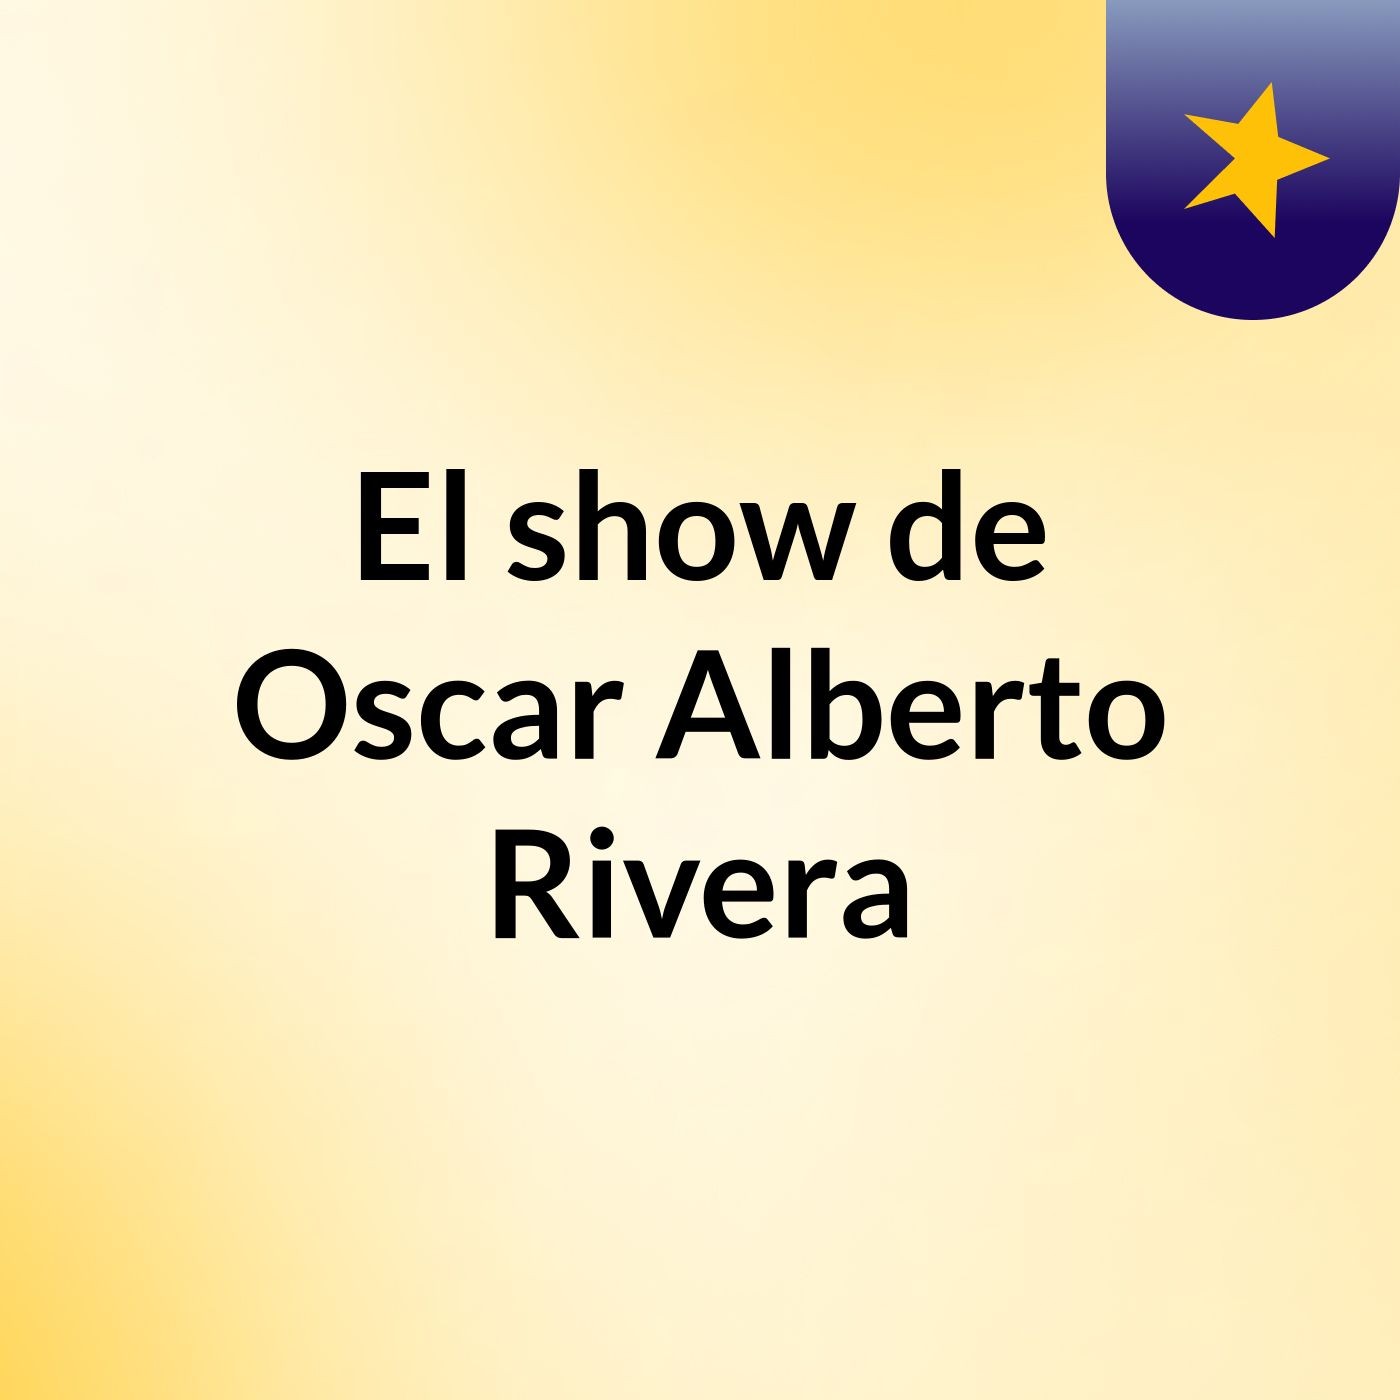 El show de Oscar Alberto Rivera